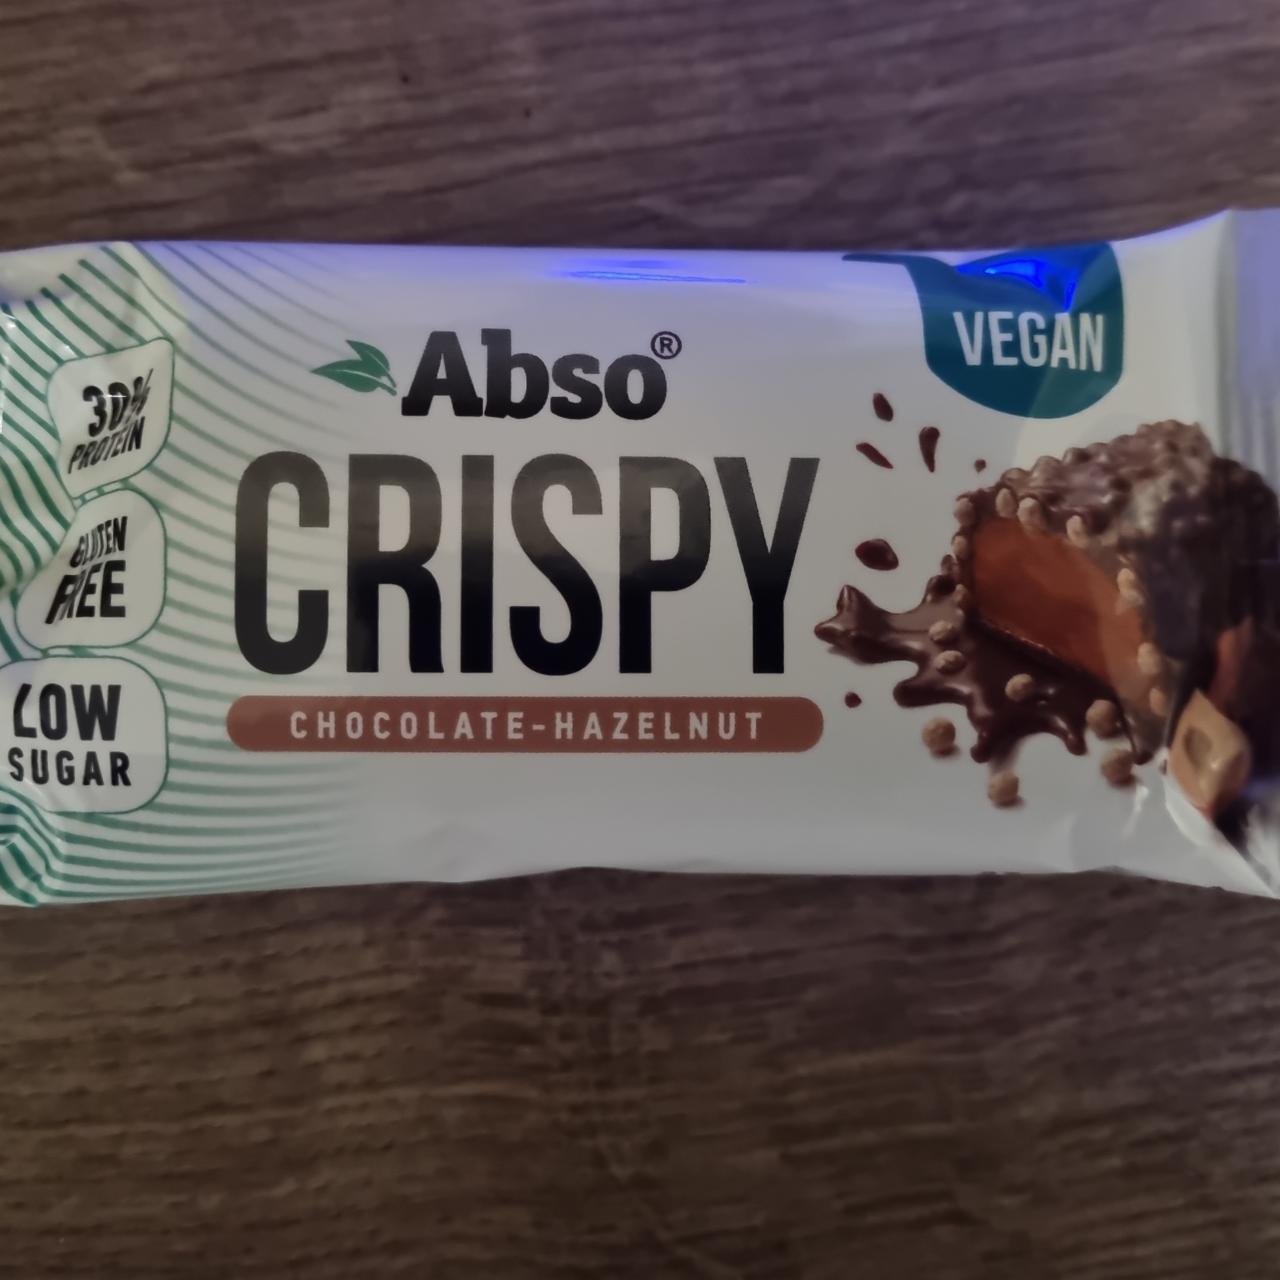 Fotografie - Crispy chocolate-hazelnut Abso